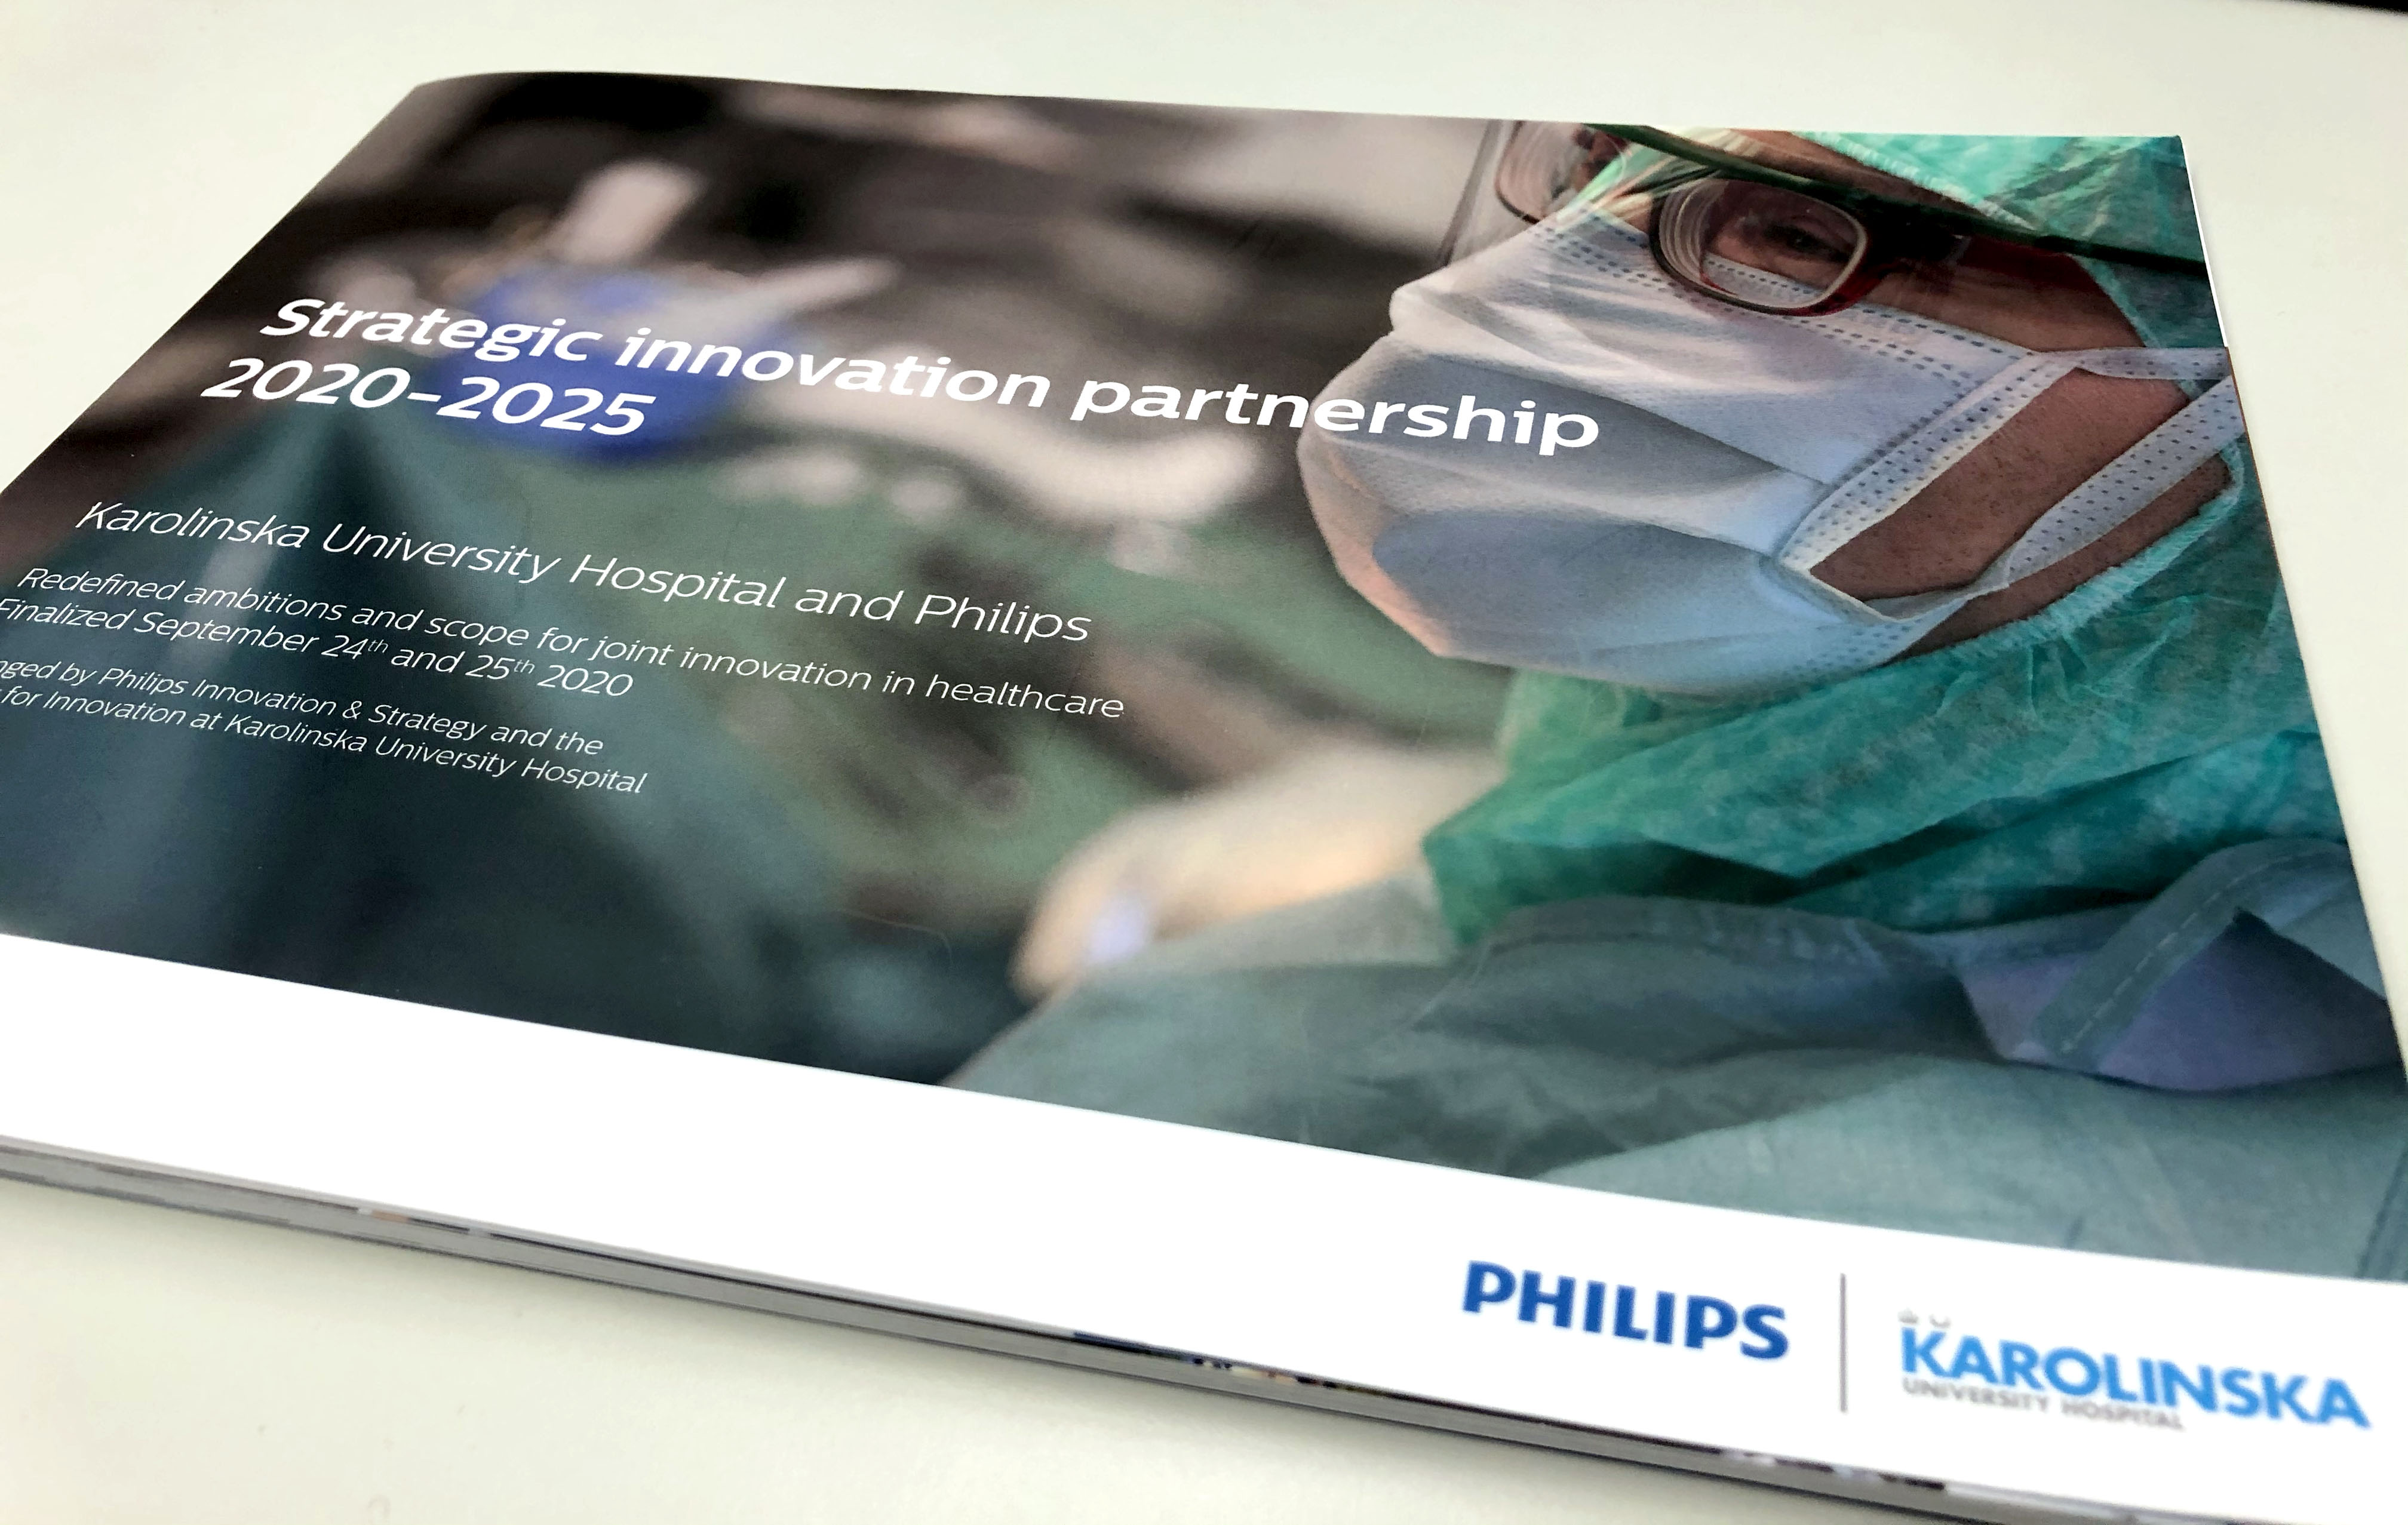 Strategi innovationspartenrskap Philips